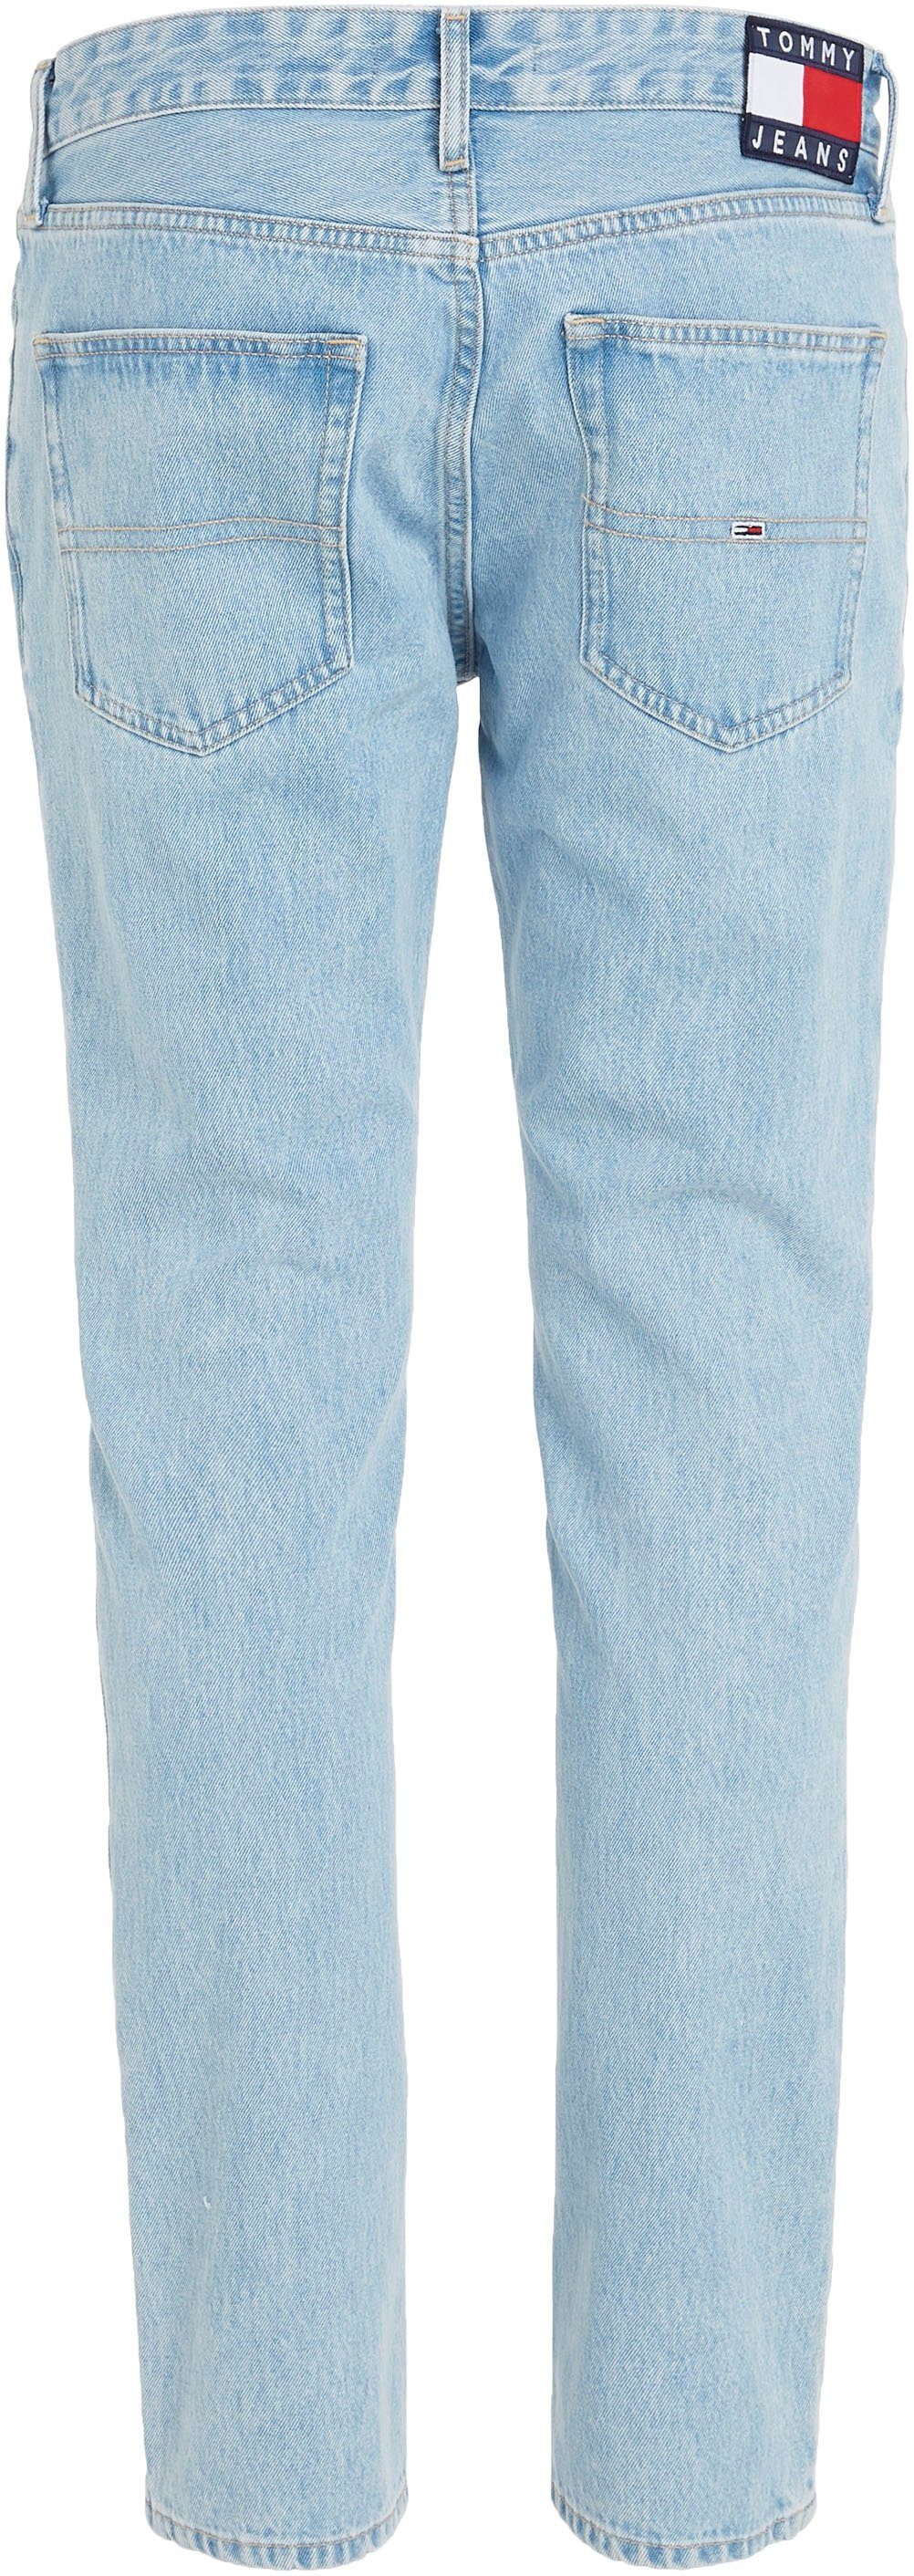 SLIM Tommy Jeans BG4015 SCANTON im Slim-fit-Jeans 5-Pocket-Stil